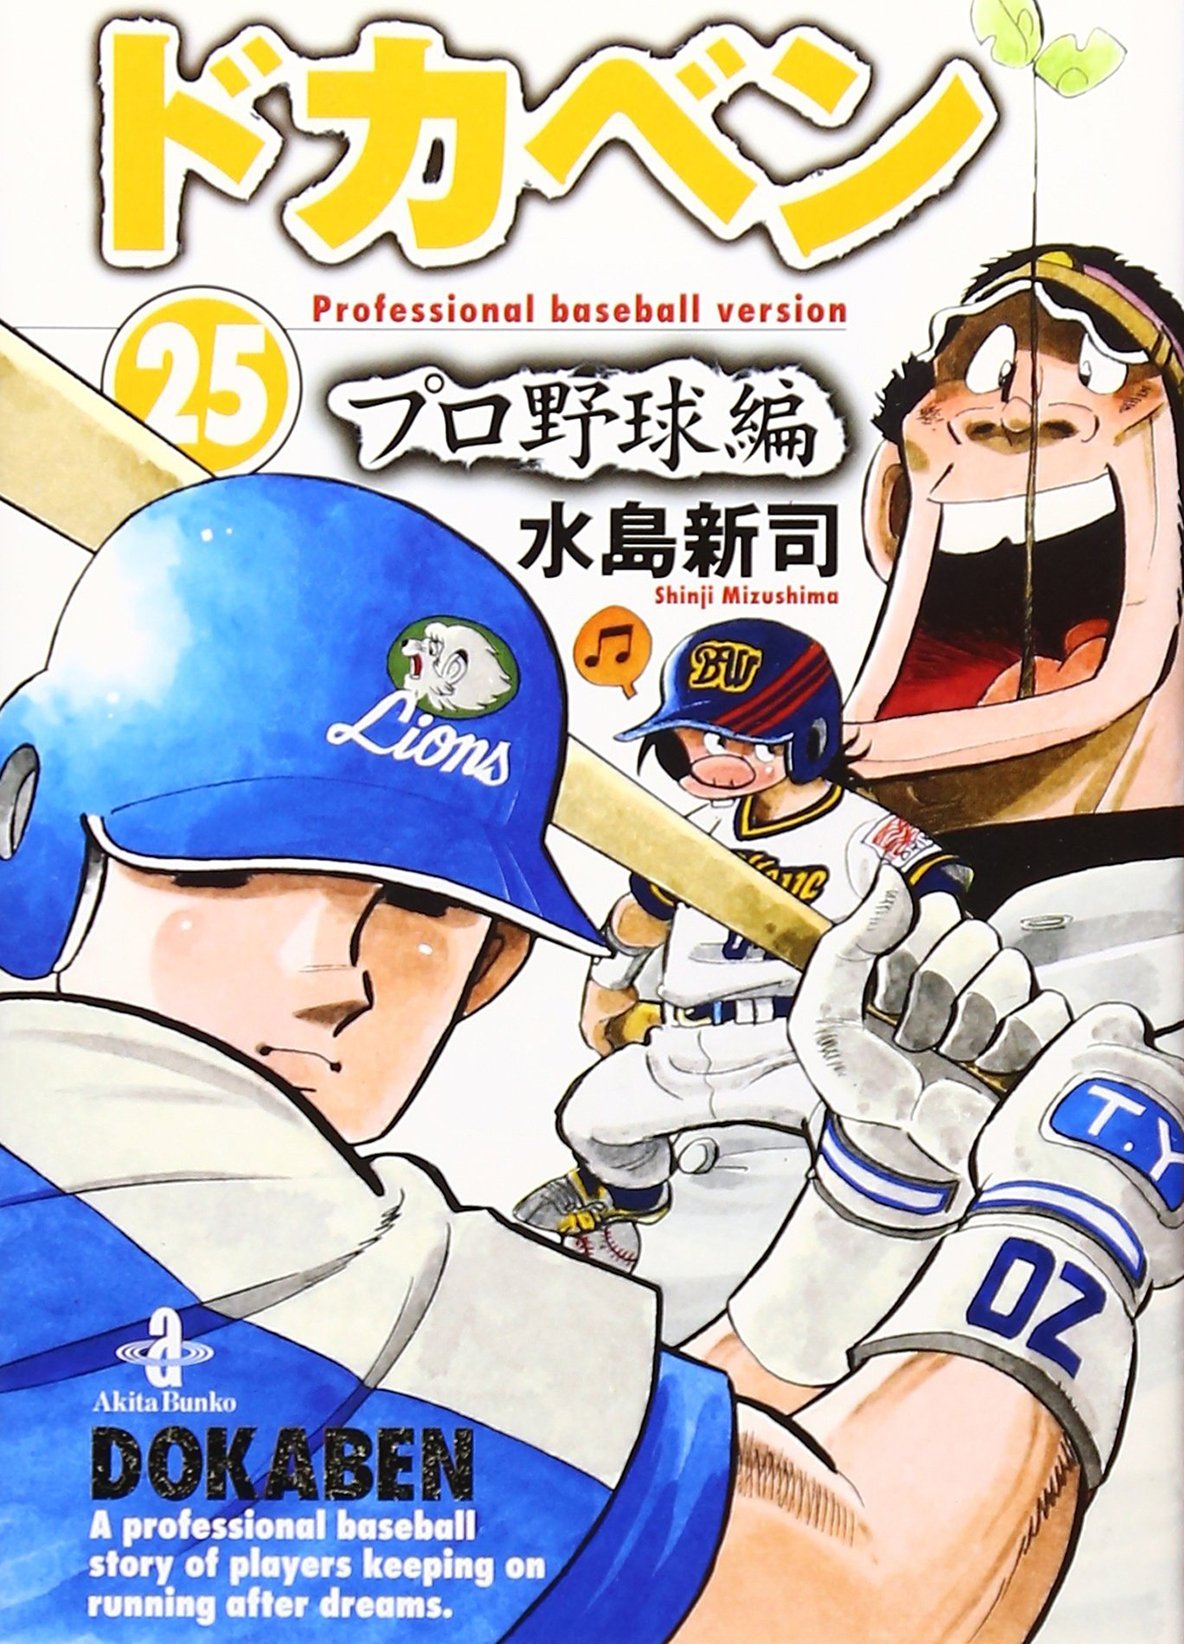 4ページ目 ドカベン 山田 が圧倒的 野球漫画の 史上最強のスラッガー ランキング ふたまん